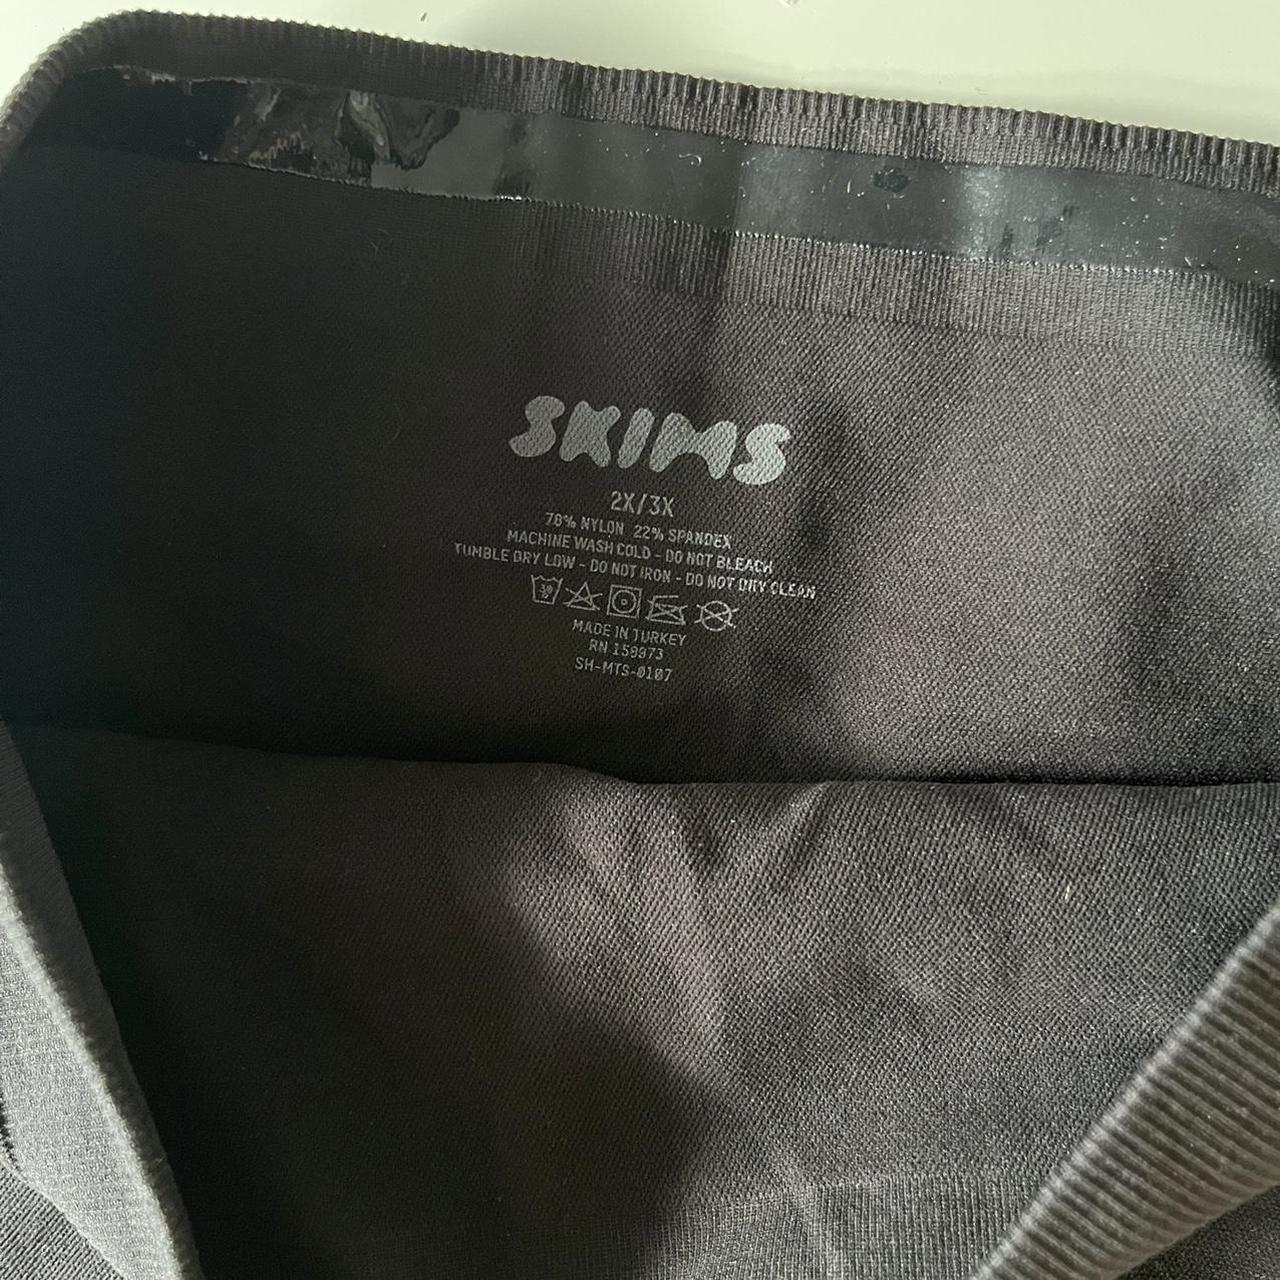 Skims NWOT Sculpting Shorts - Depop